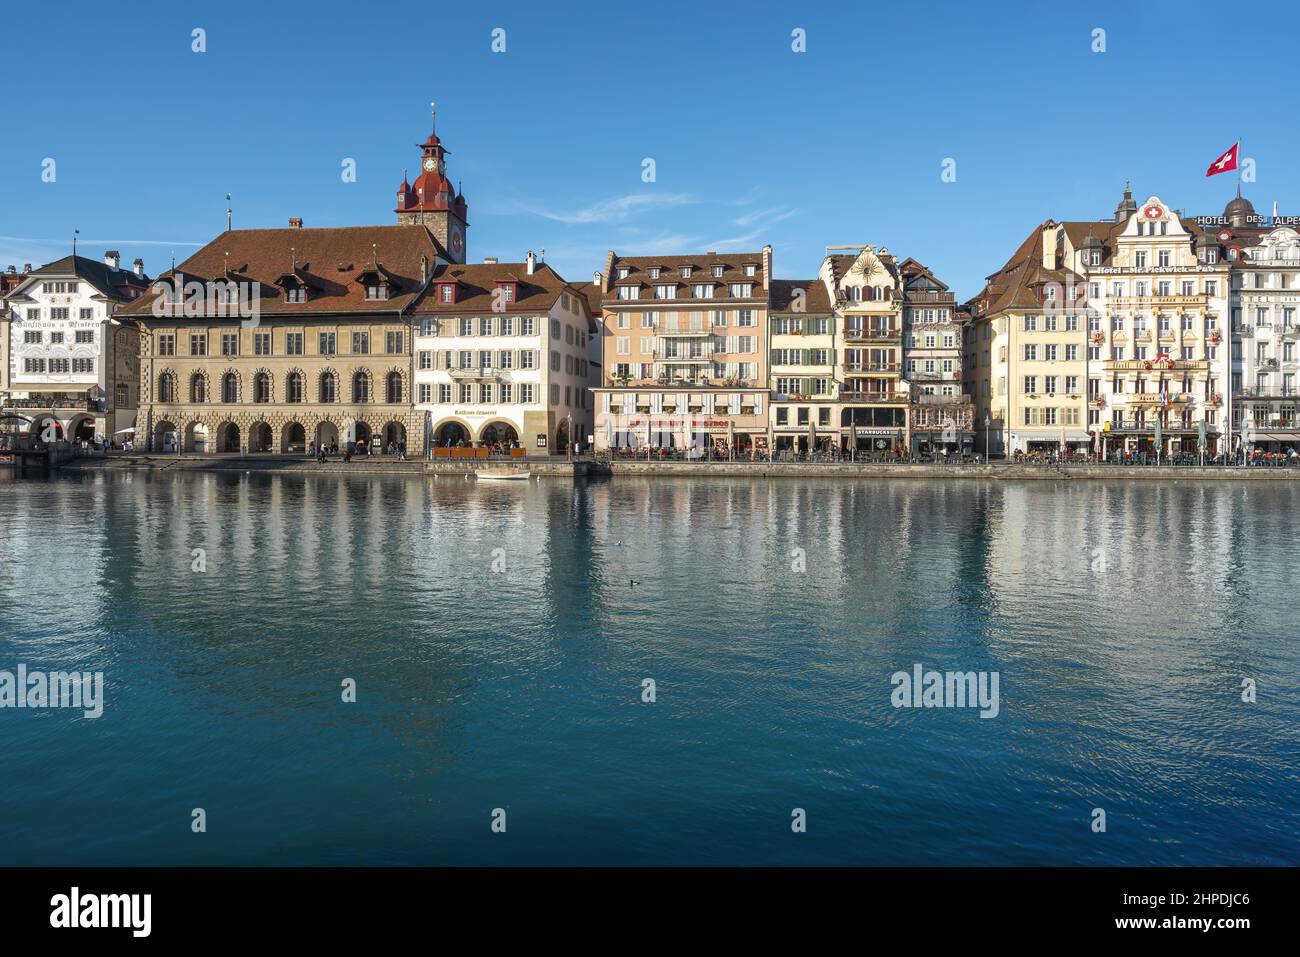 Lucerne, Suisse - 27 novembre 2019 : vue panoramique de la vieille ville de Lucerne avec tour de l'hôtel de ville et rivière Reuss - Lucerne, Suisse Banque D'Images